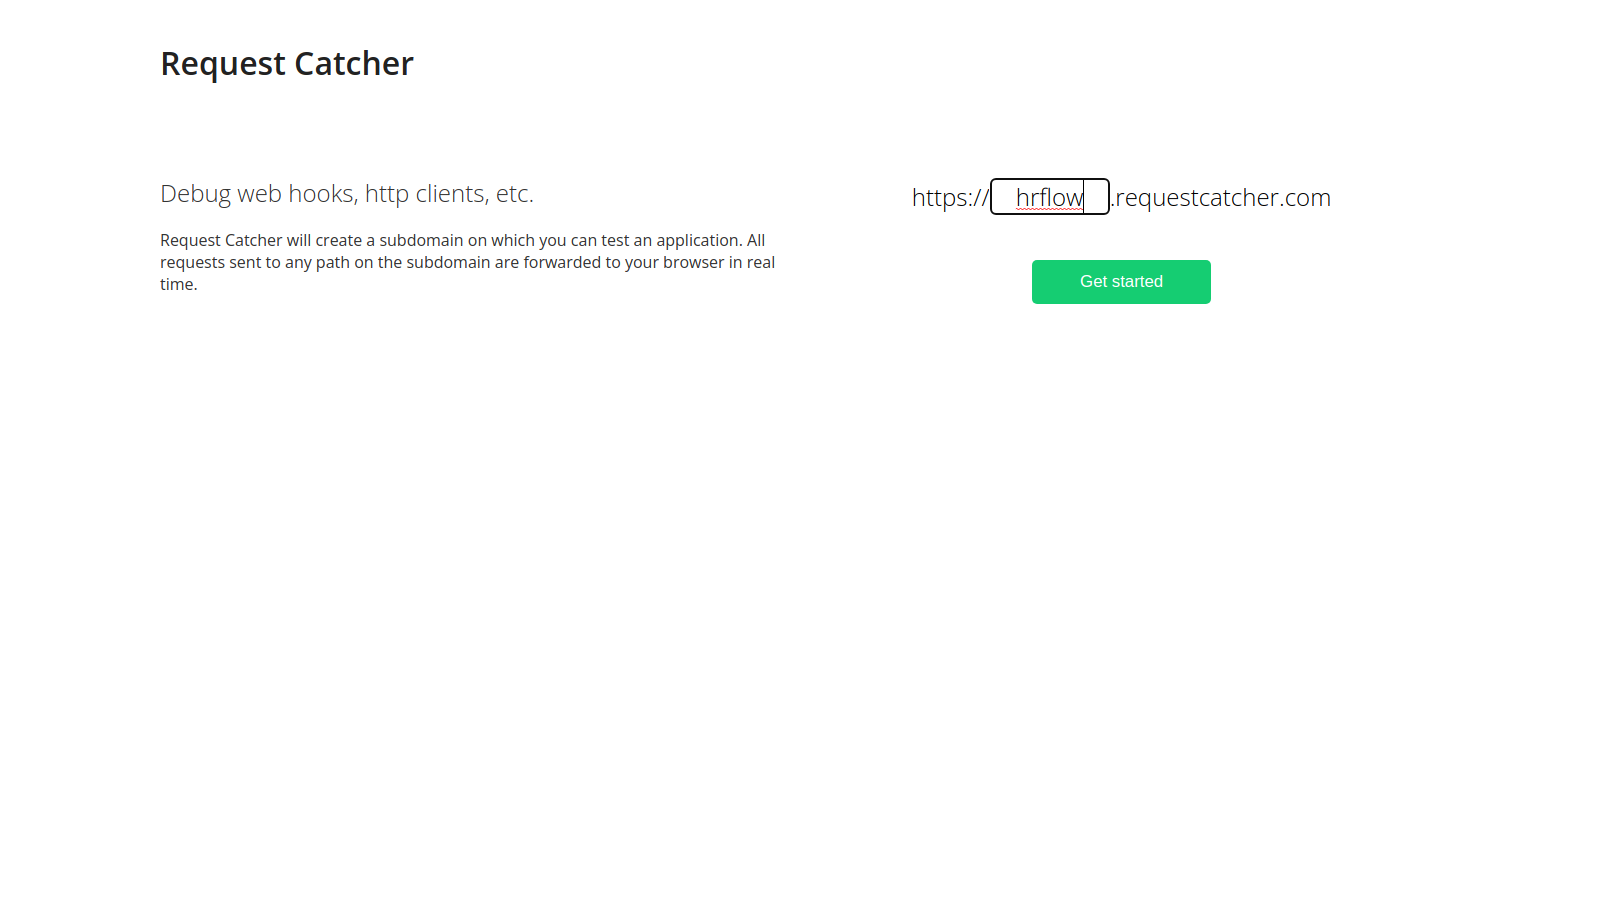 Go to the website RequestCatcher dot com and create a fake Webhook URL